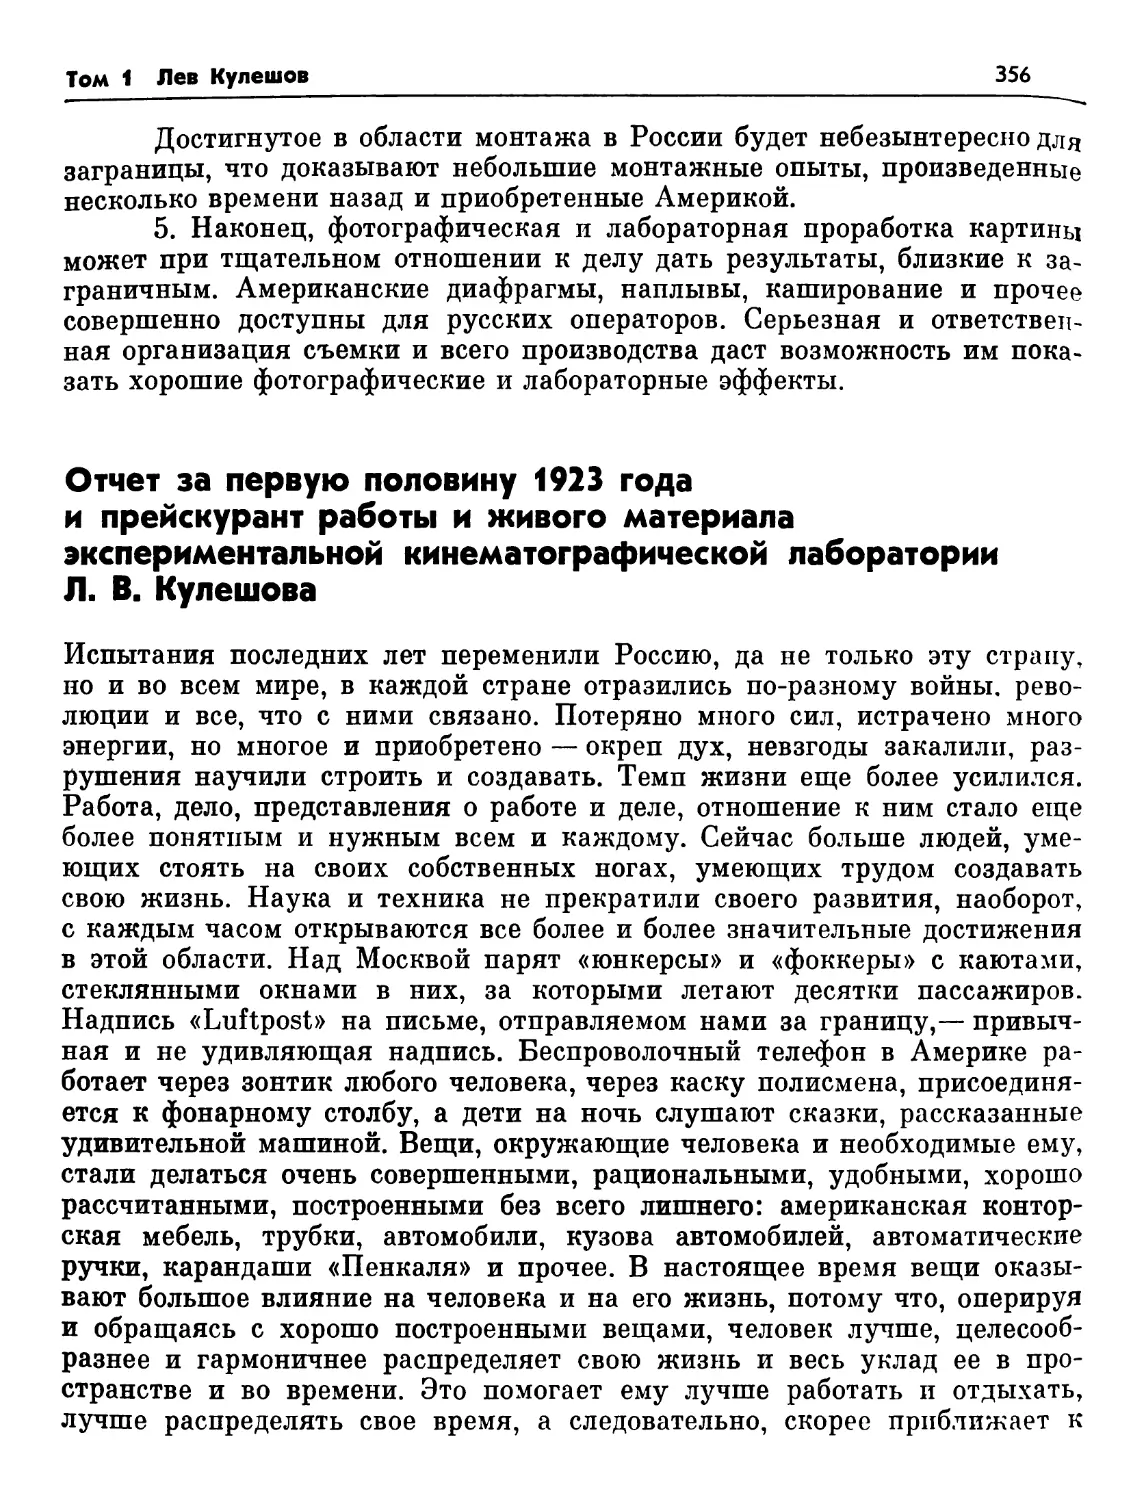 Отчет за первую половину 1923 года лаборатории Л. В. Кулешова